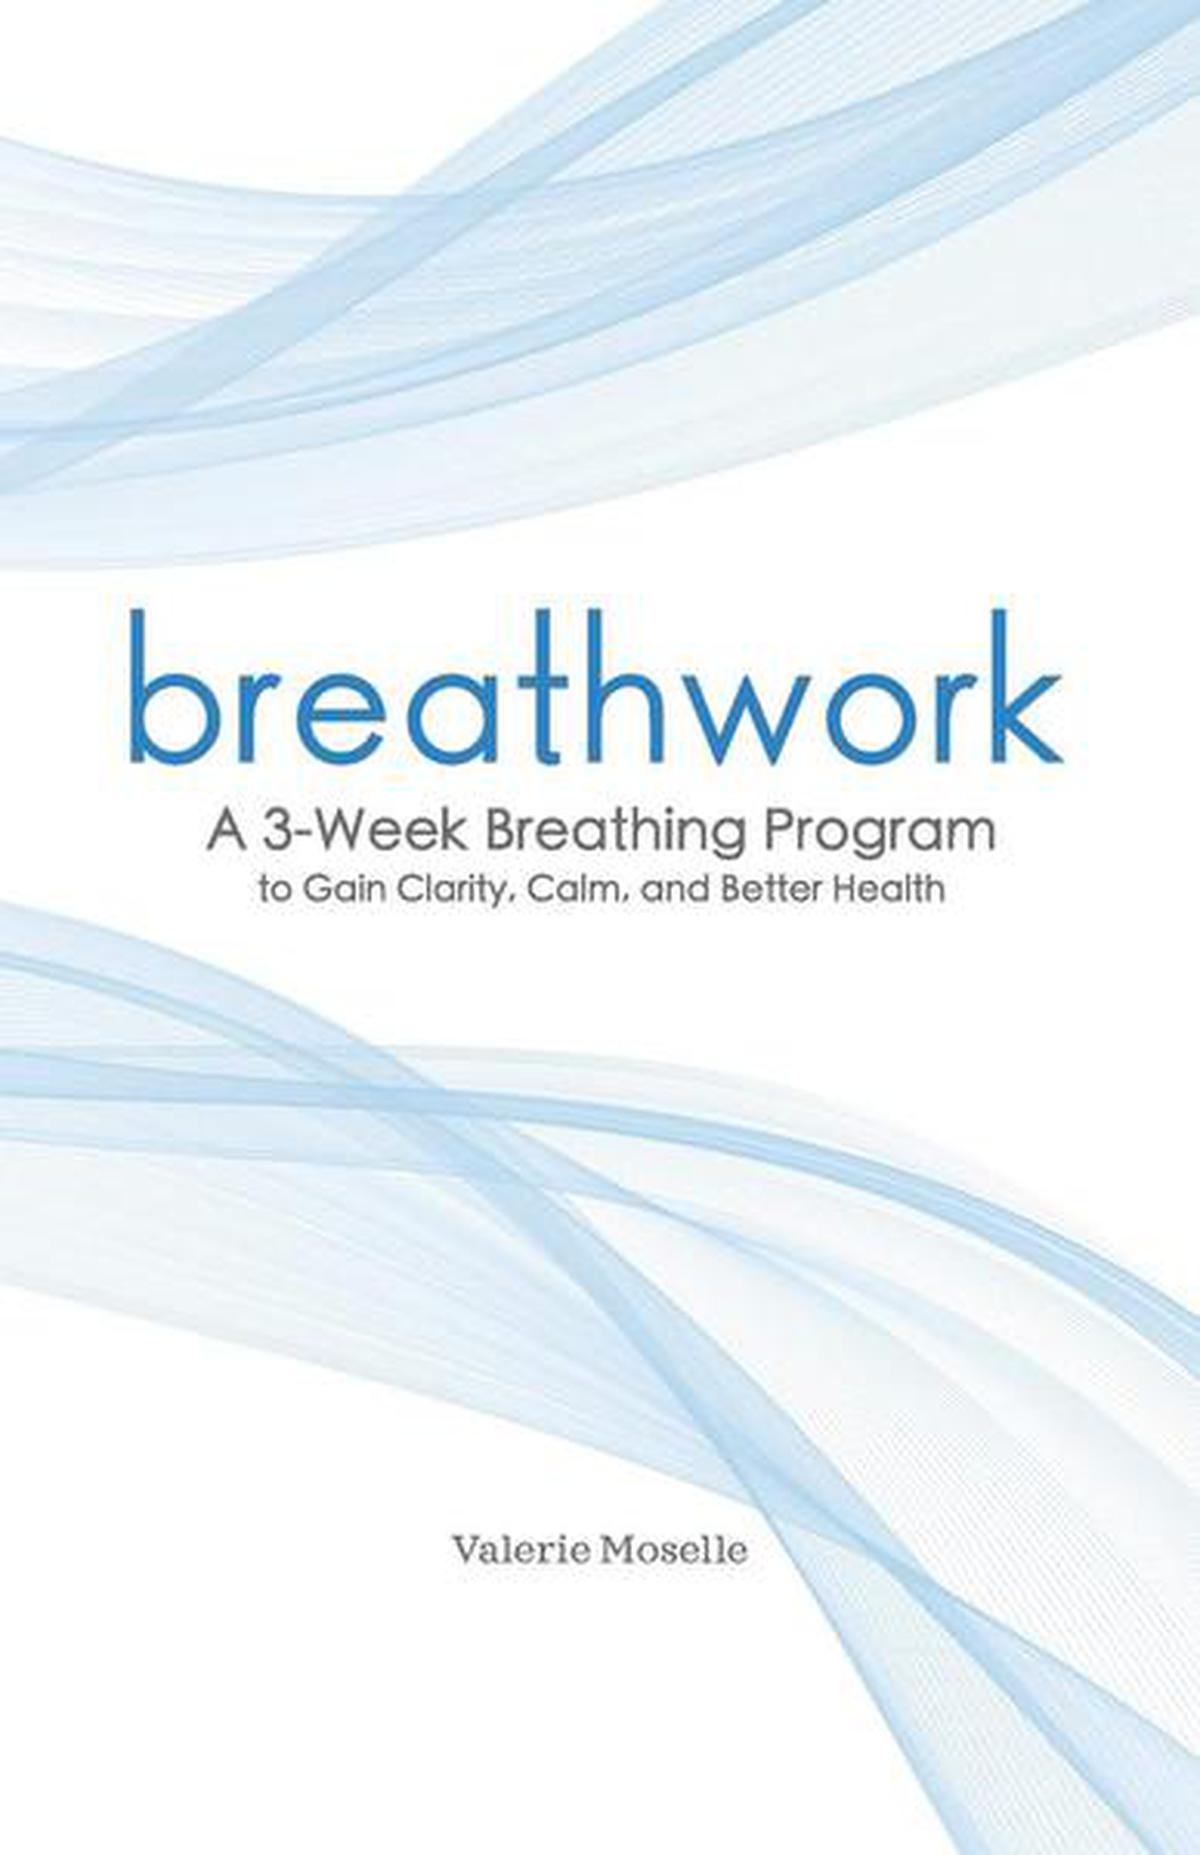 Libros de salud que nos ayudan a respirar, comer y vivir bien